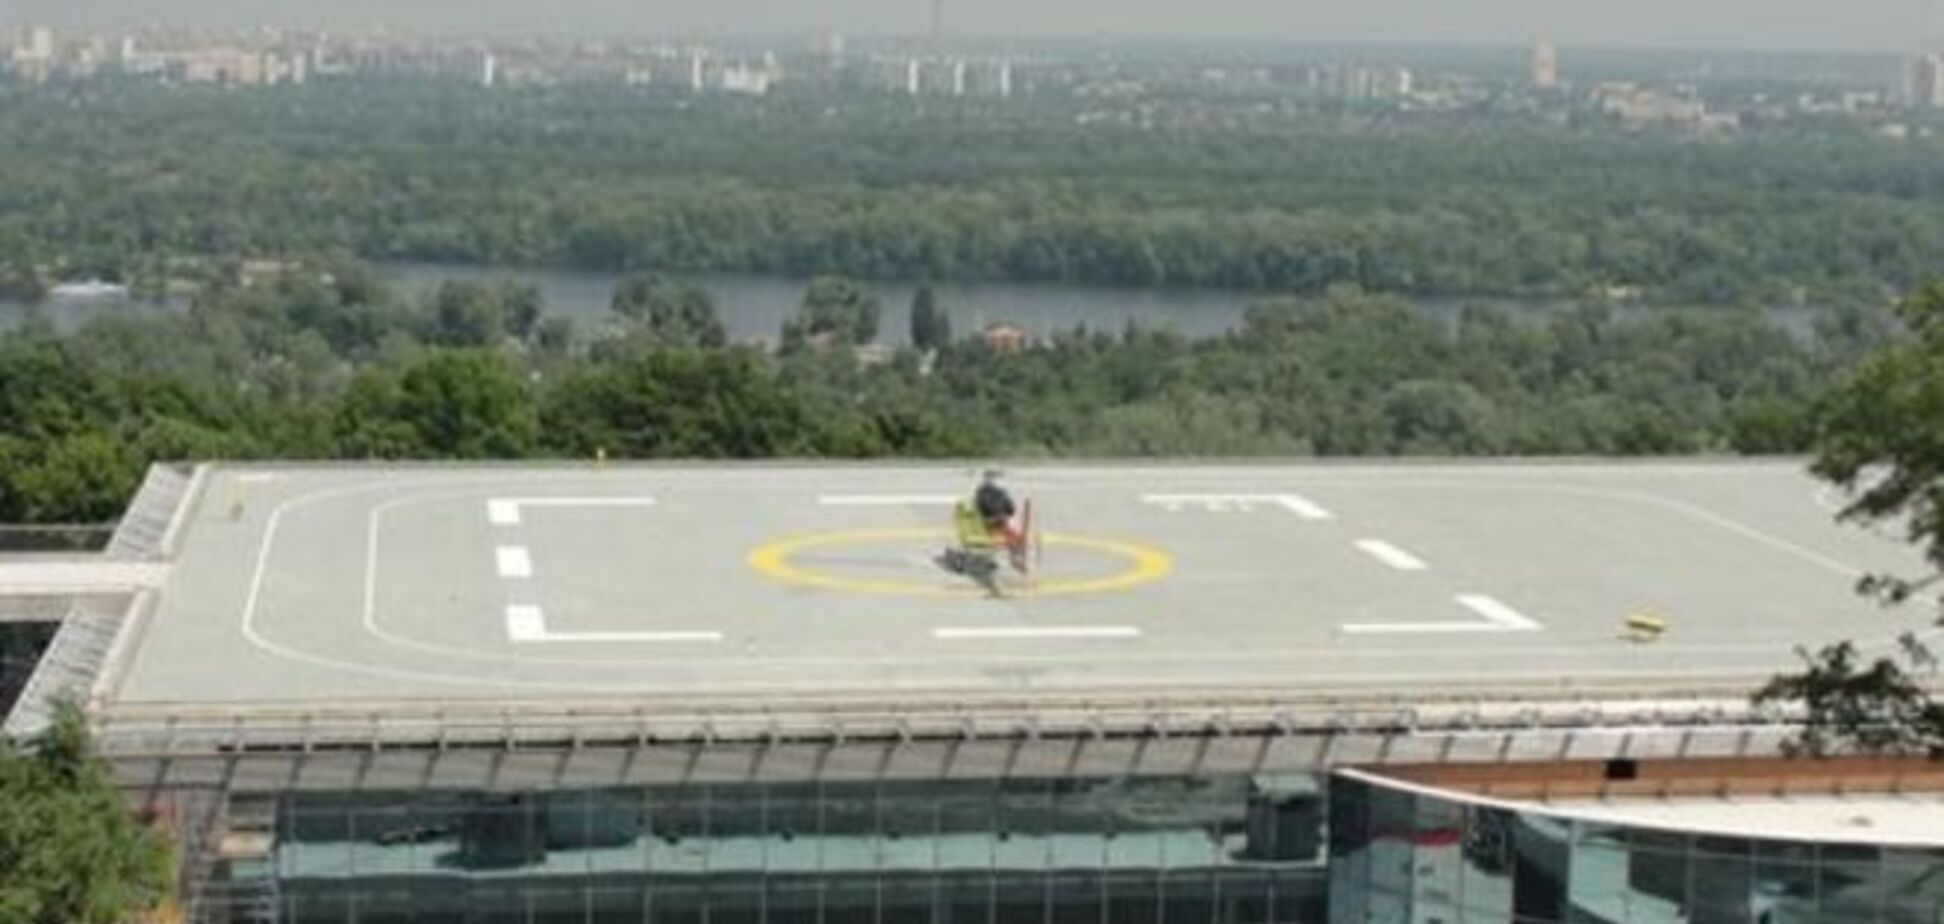 Вопрос вертолетной площадки Януковича получит международный резонанс